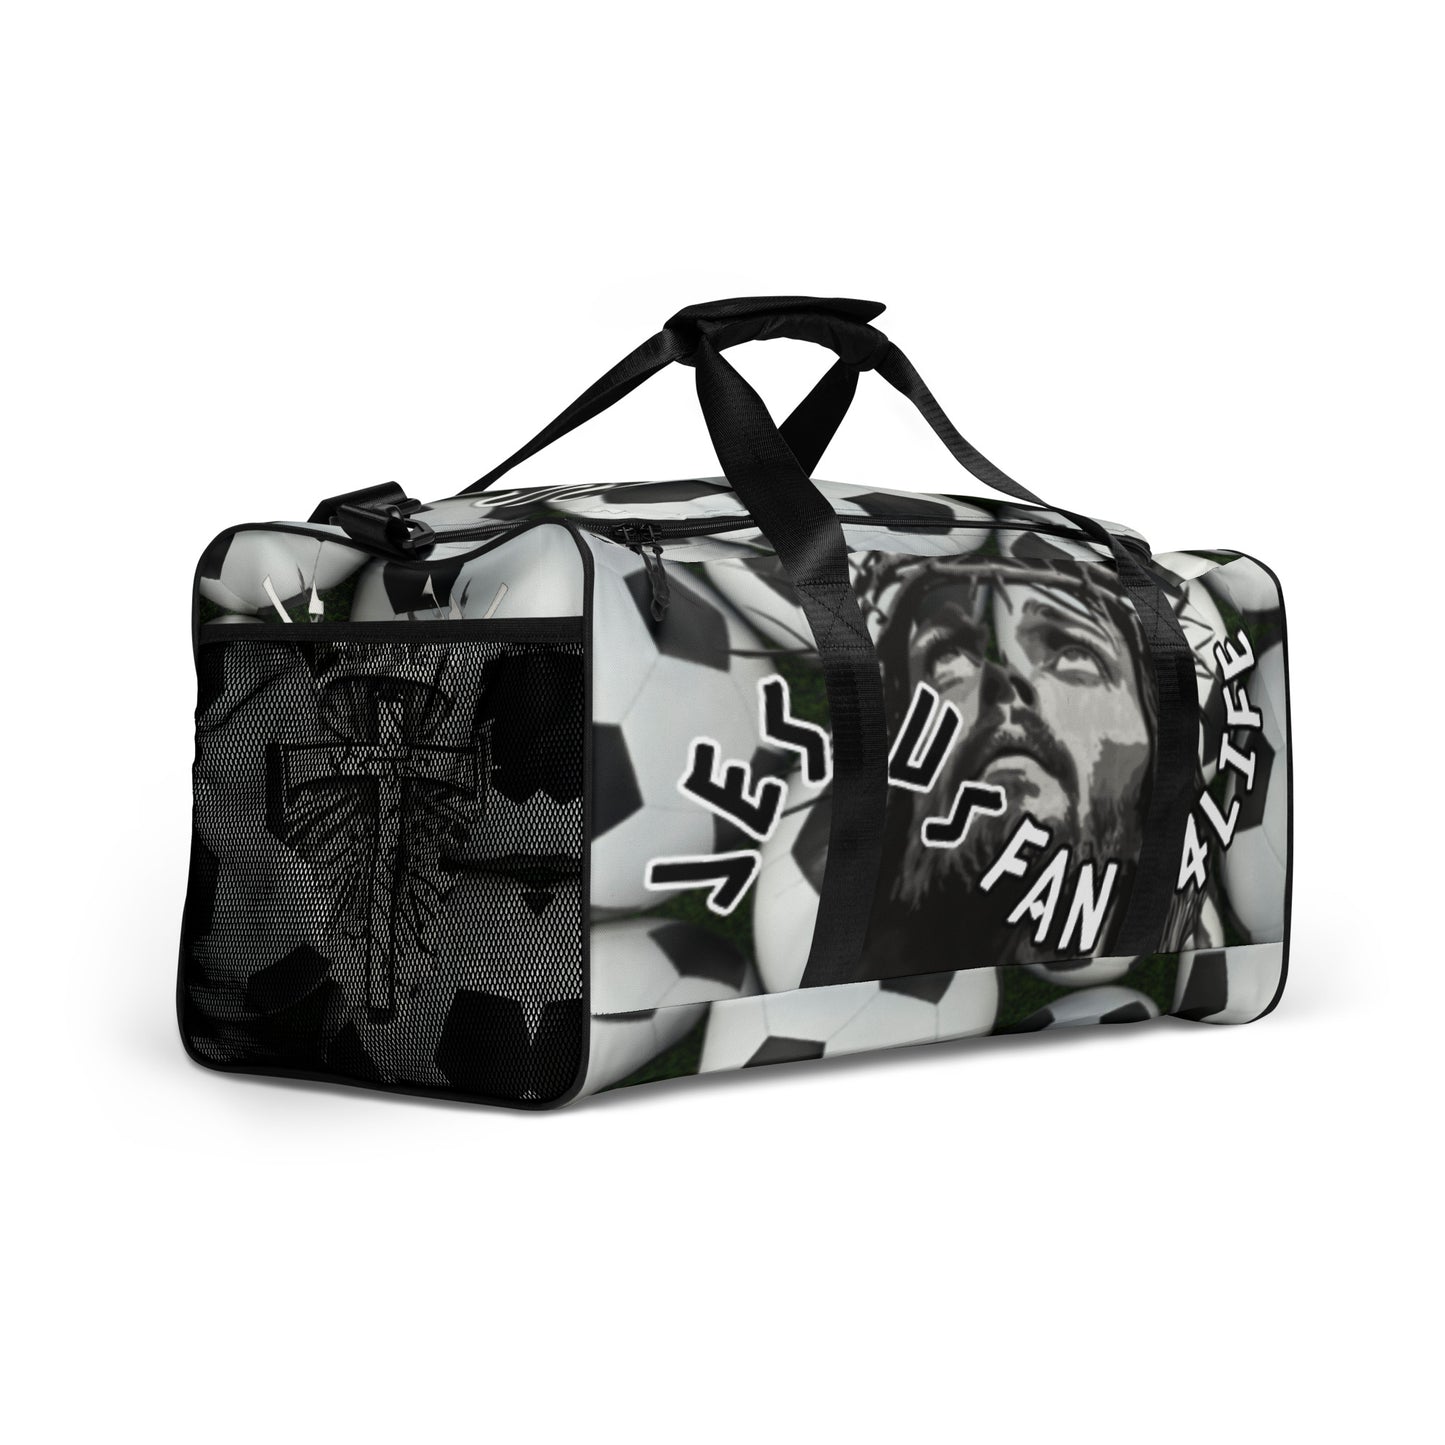 Jesus Fan 4Life- Soccer Duffle bag